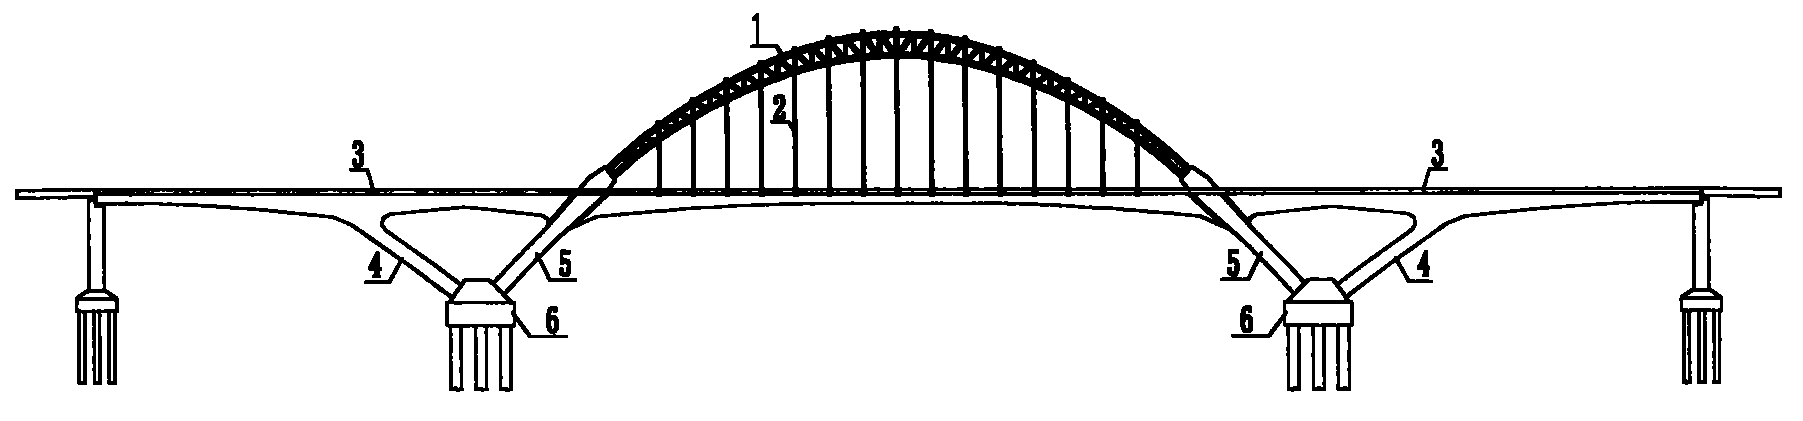 v型刚构拱组合桥